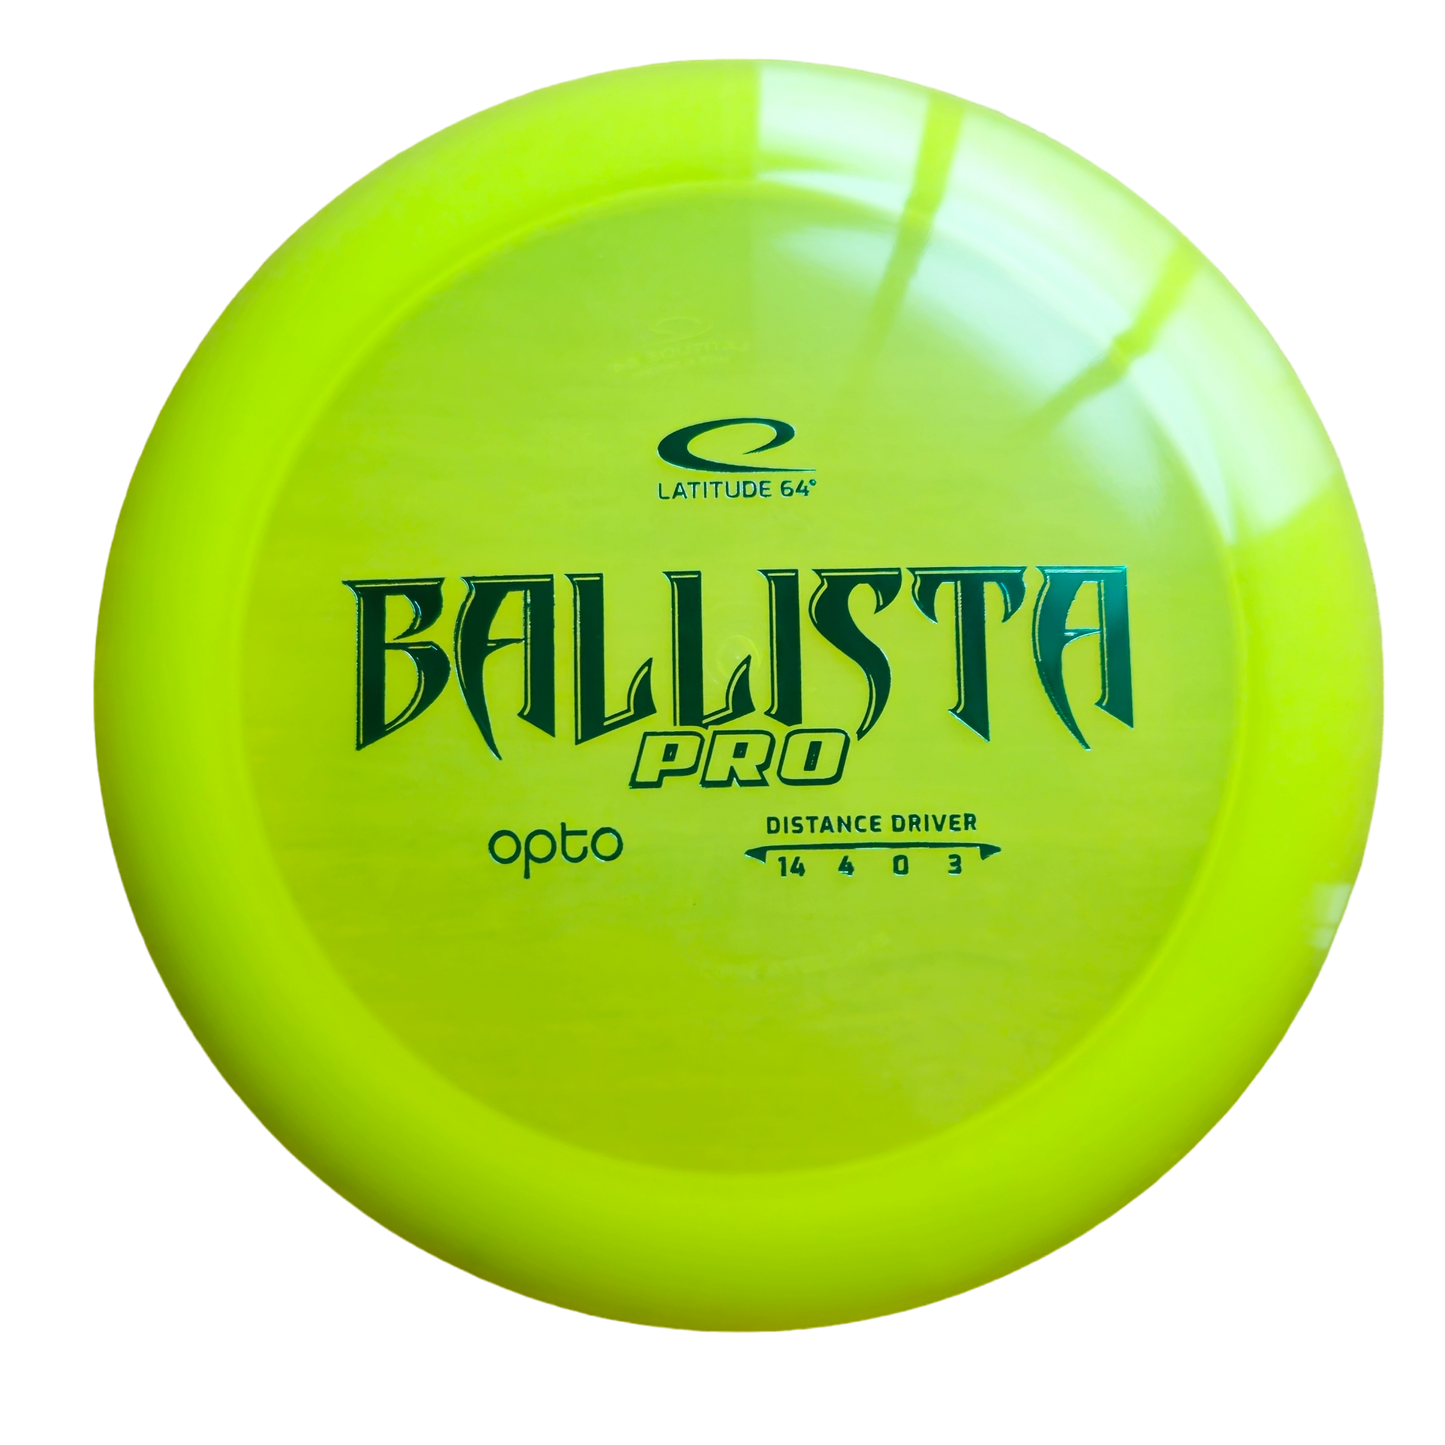 Latitude 64 - Ballista Pro - Opto